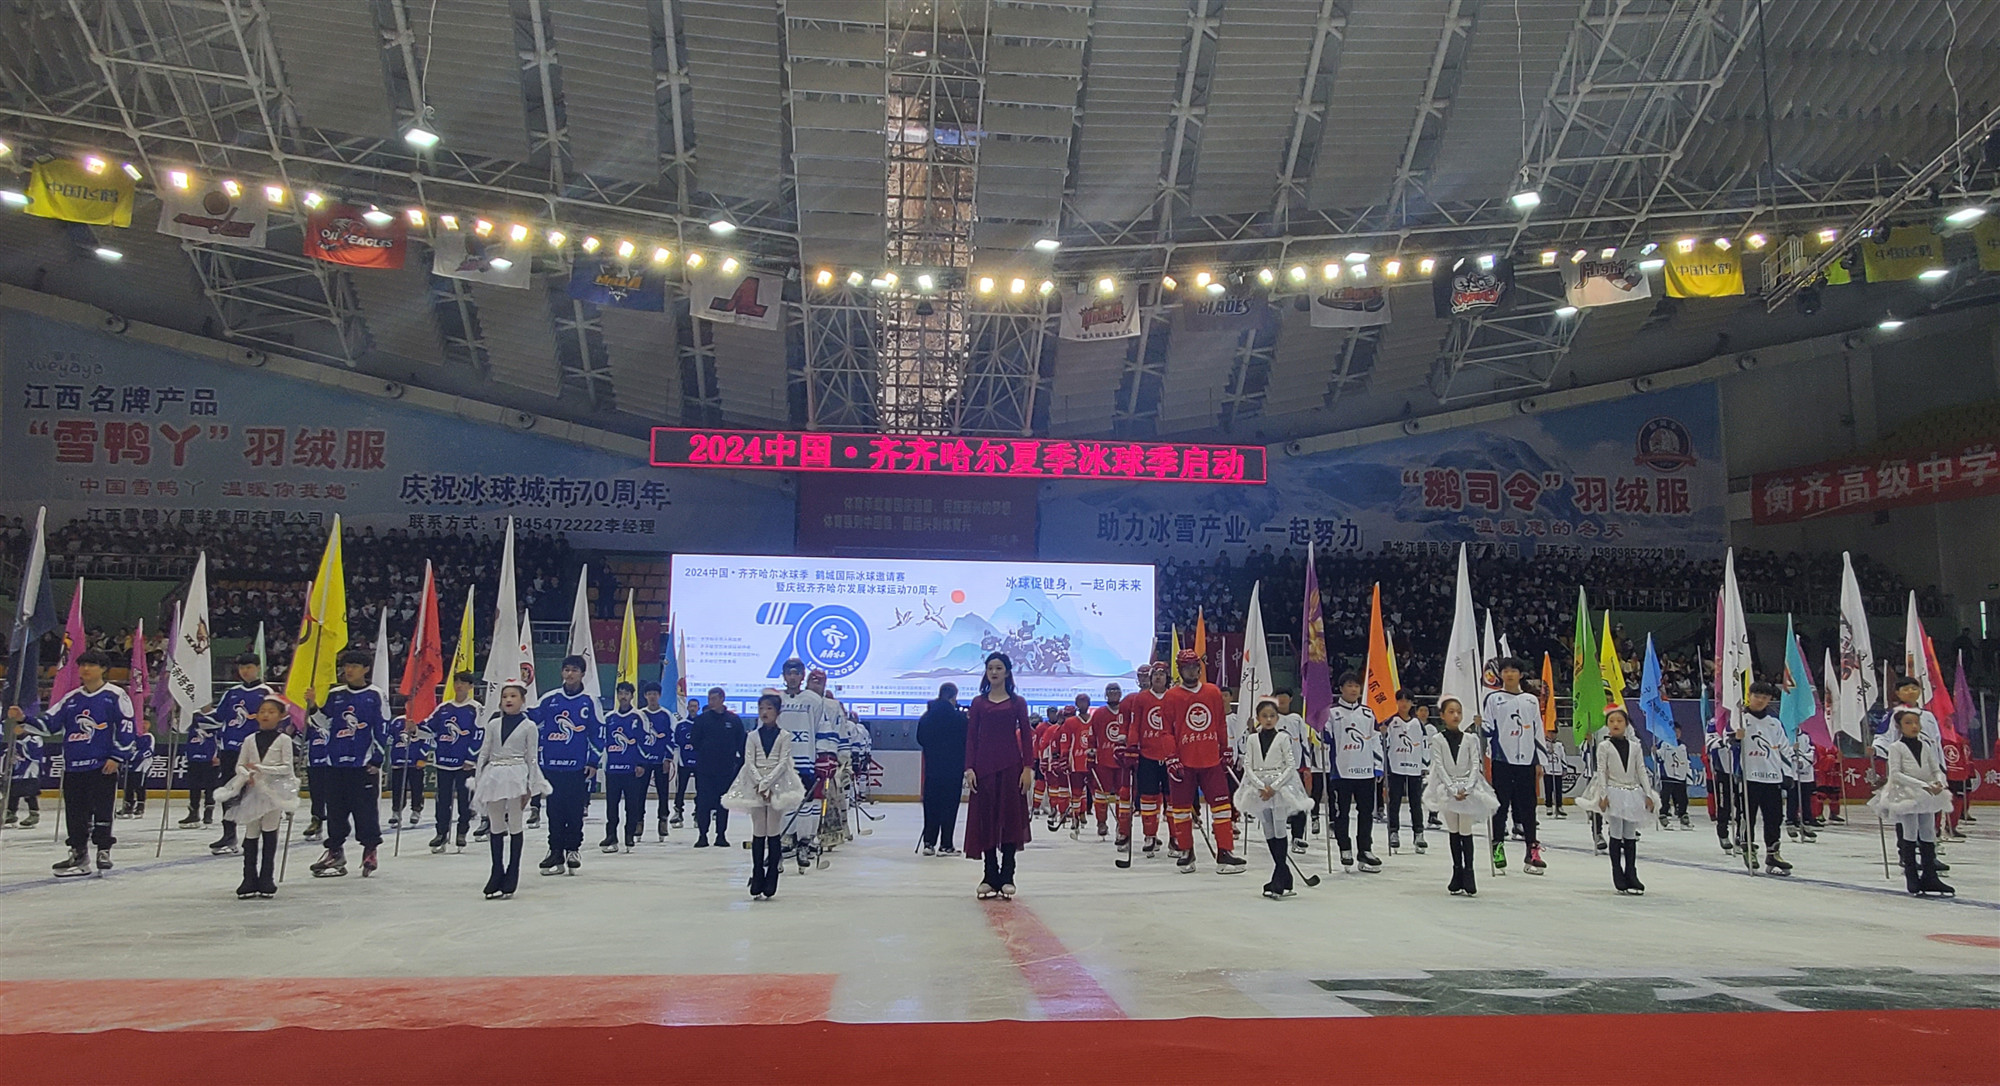 2024中國·齊齊哈爾夏季冰球季啟動